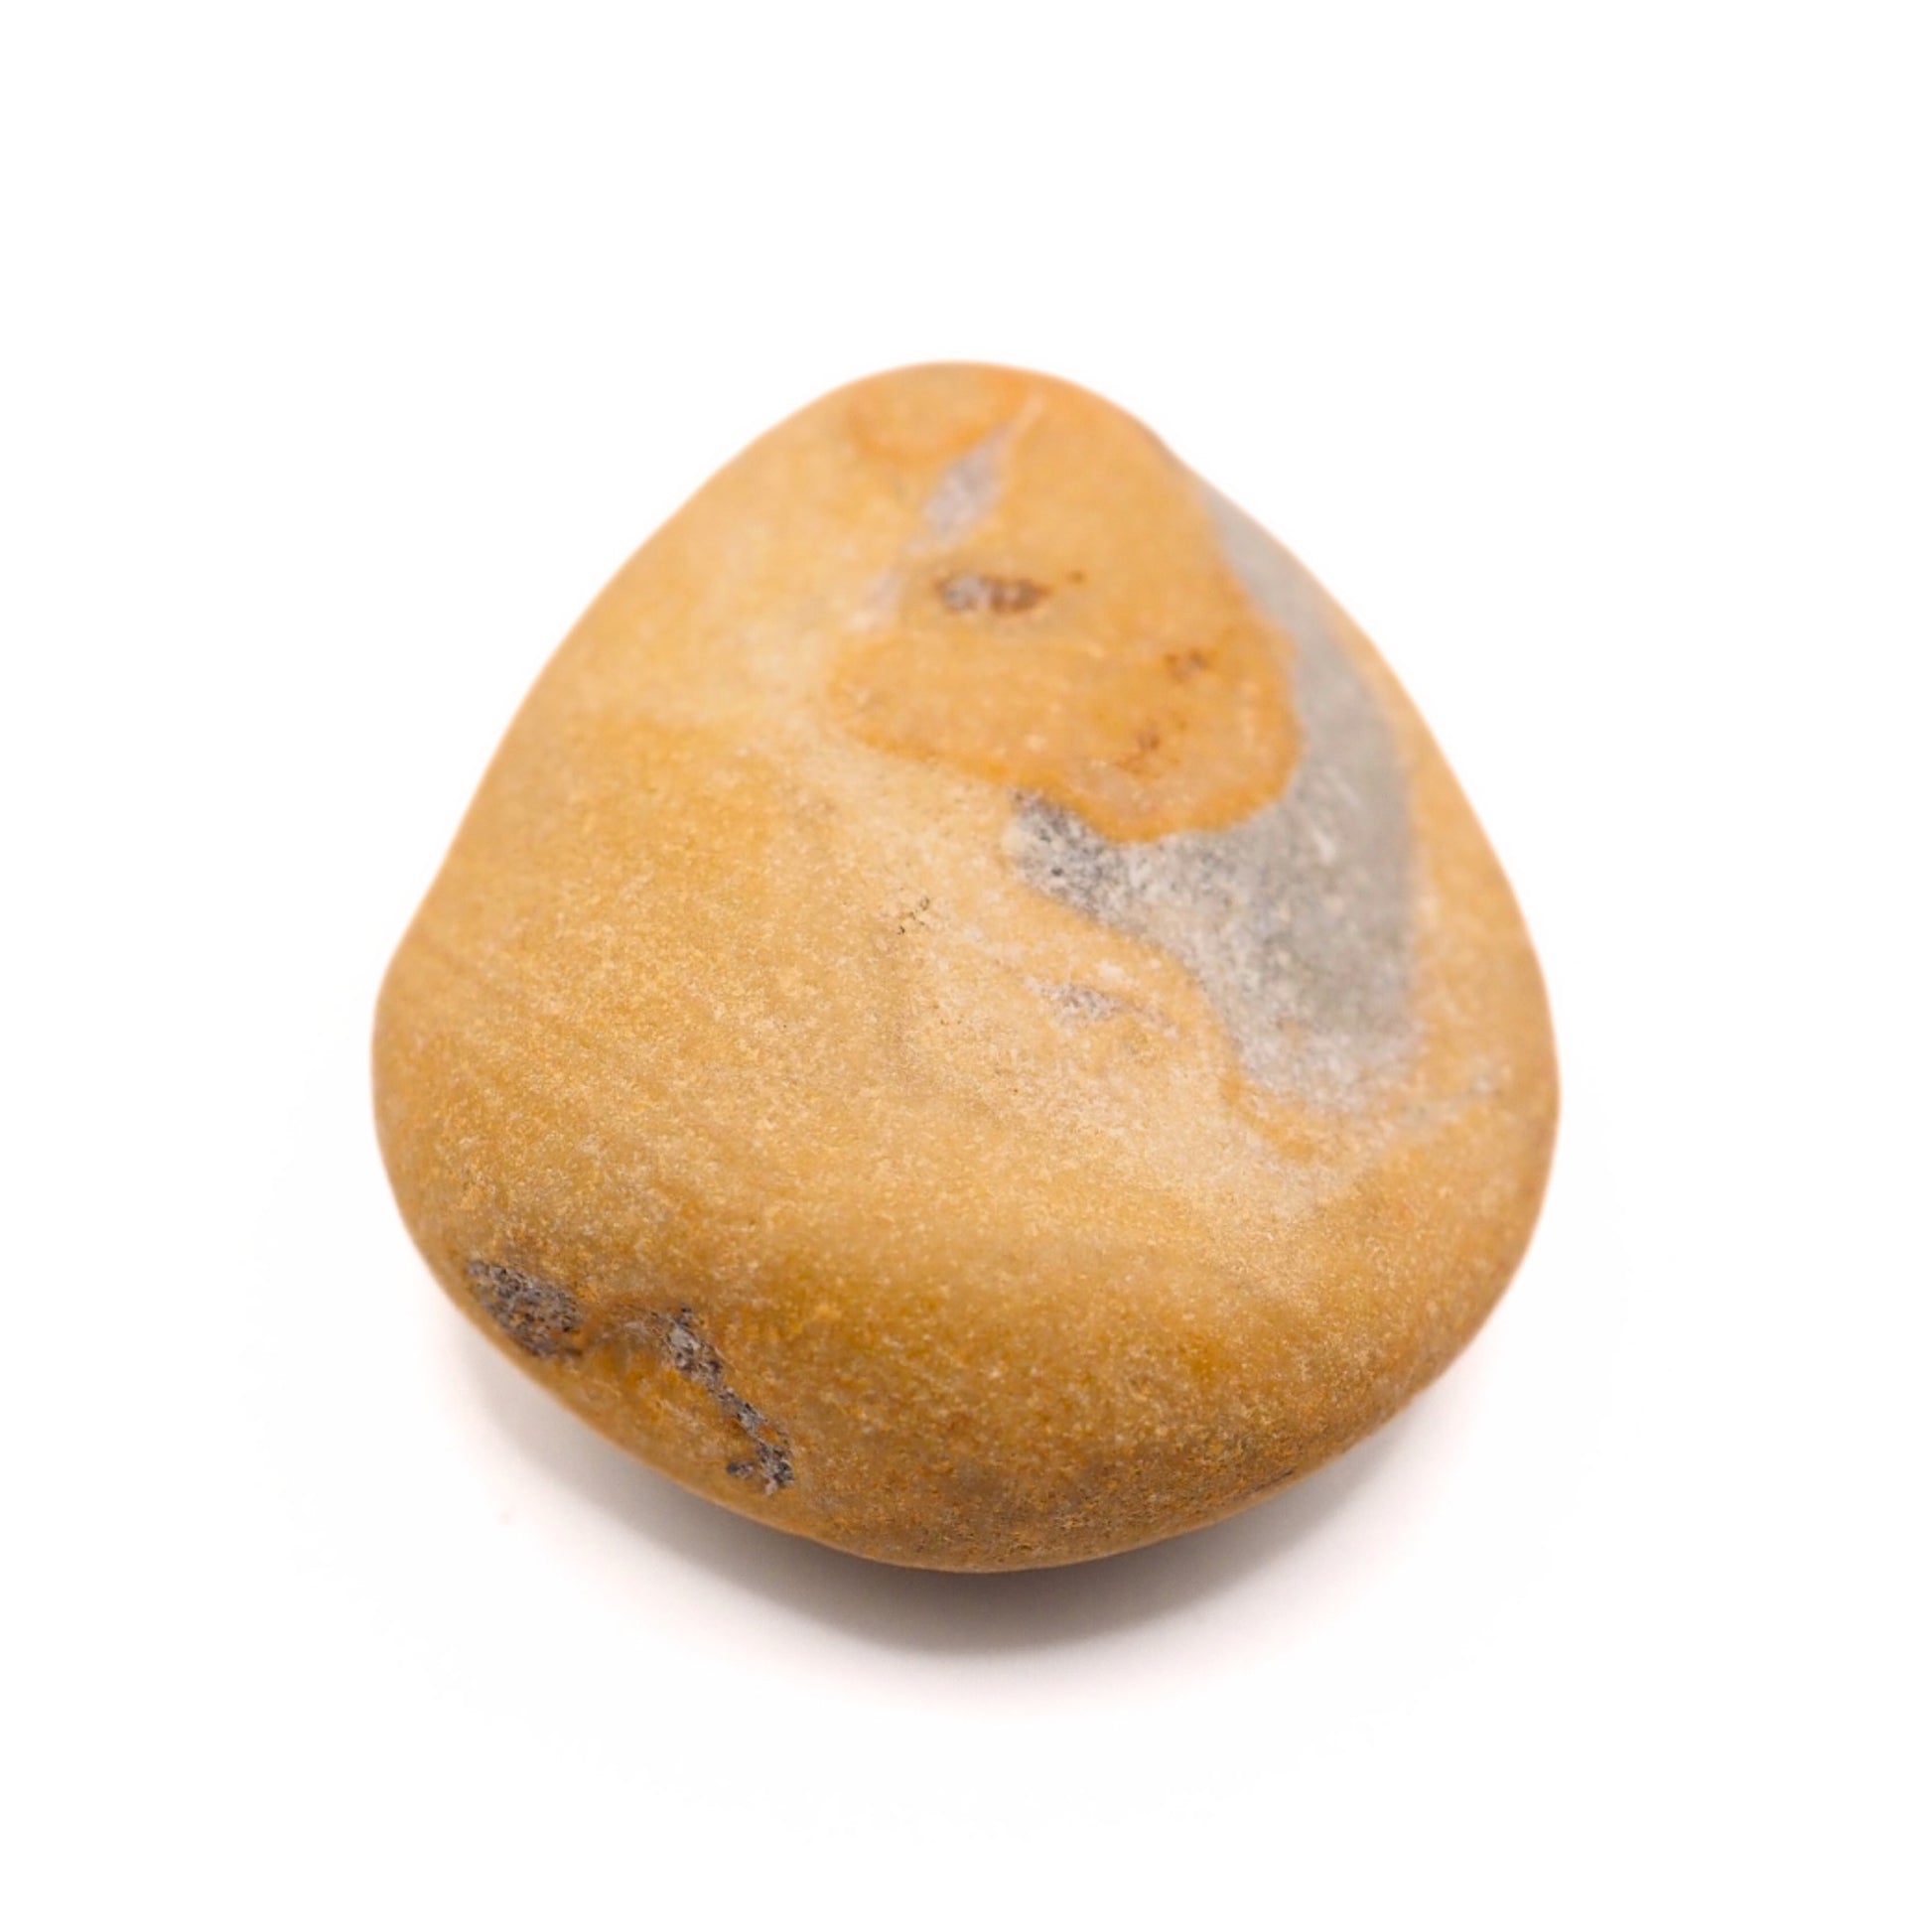 Yellow jasper beach stone close up